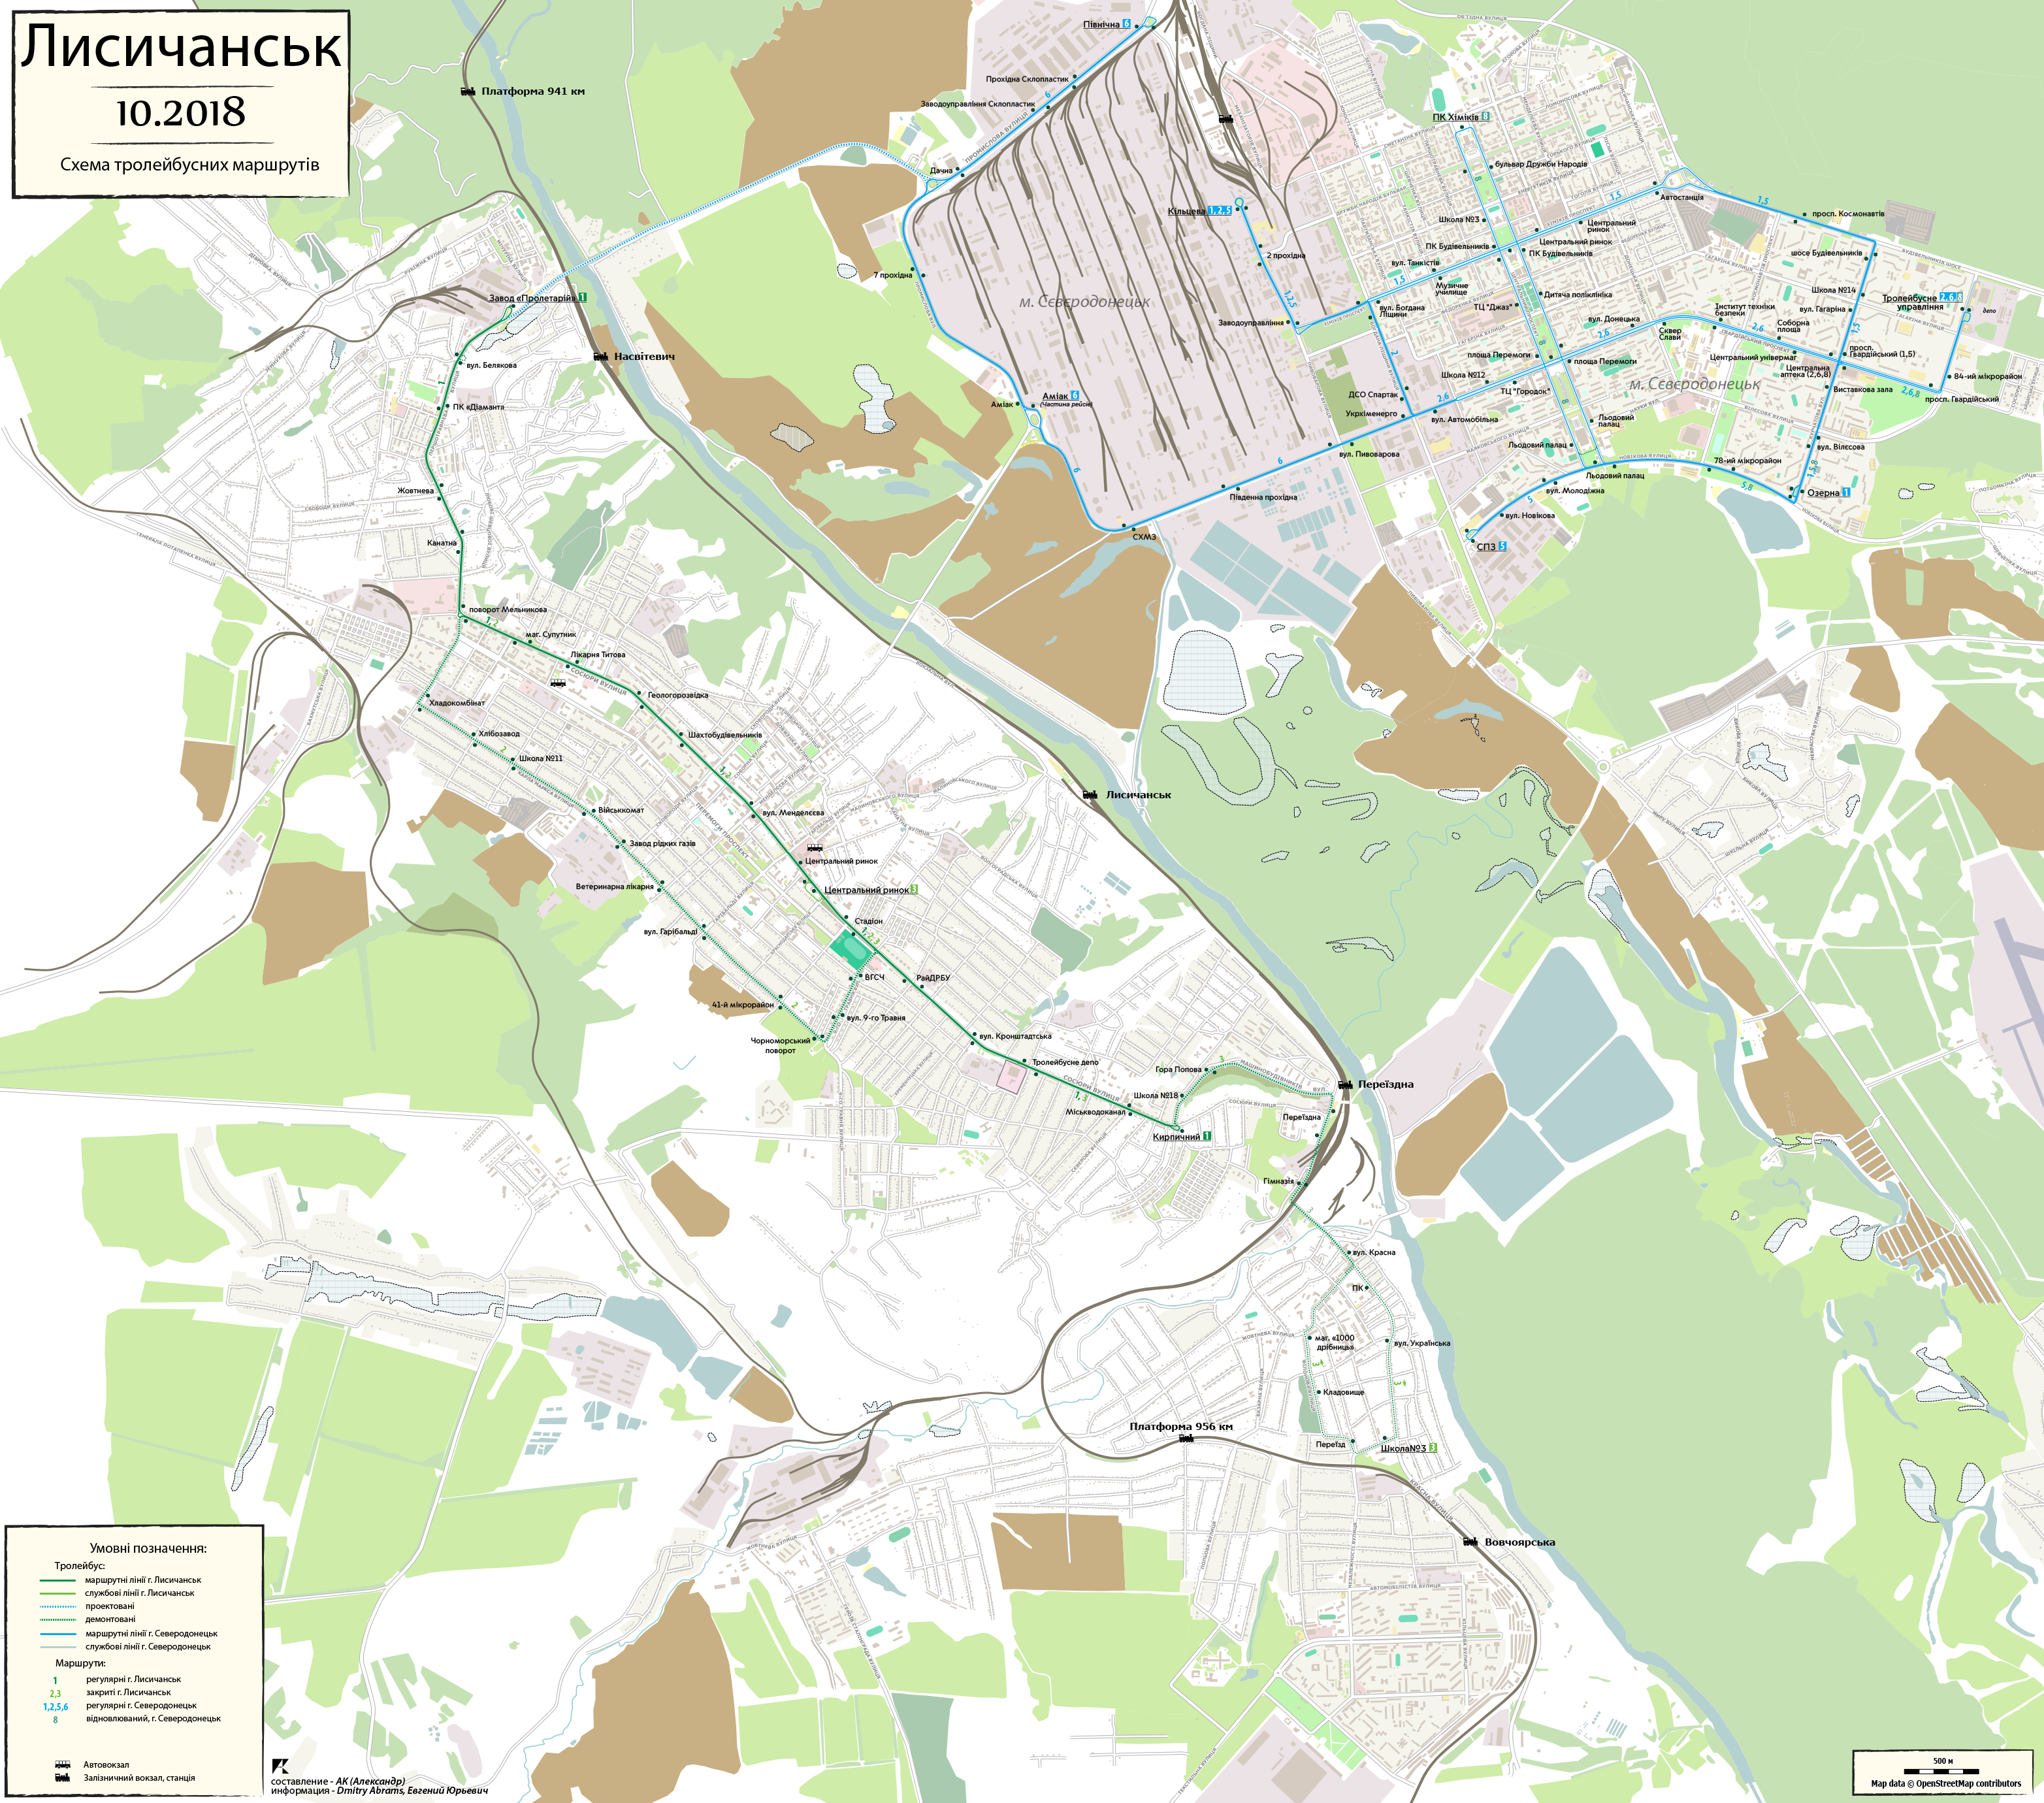 Severodonetsk — Maps; Lisichansk — Route maps